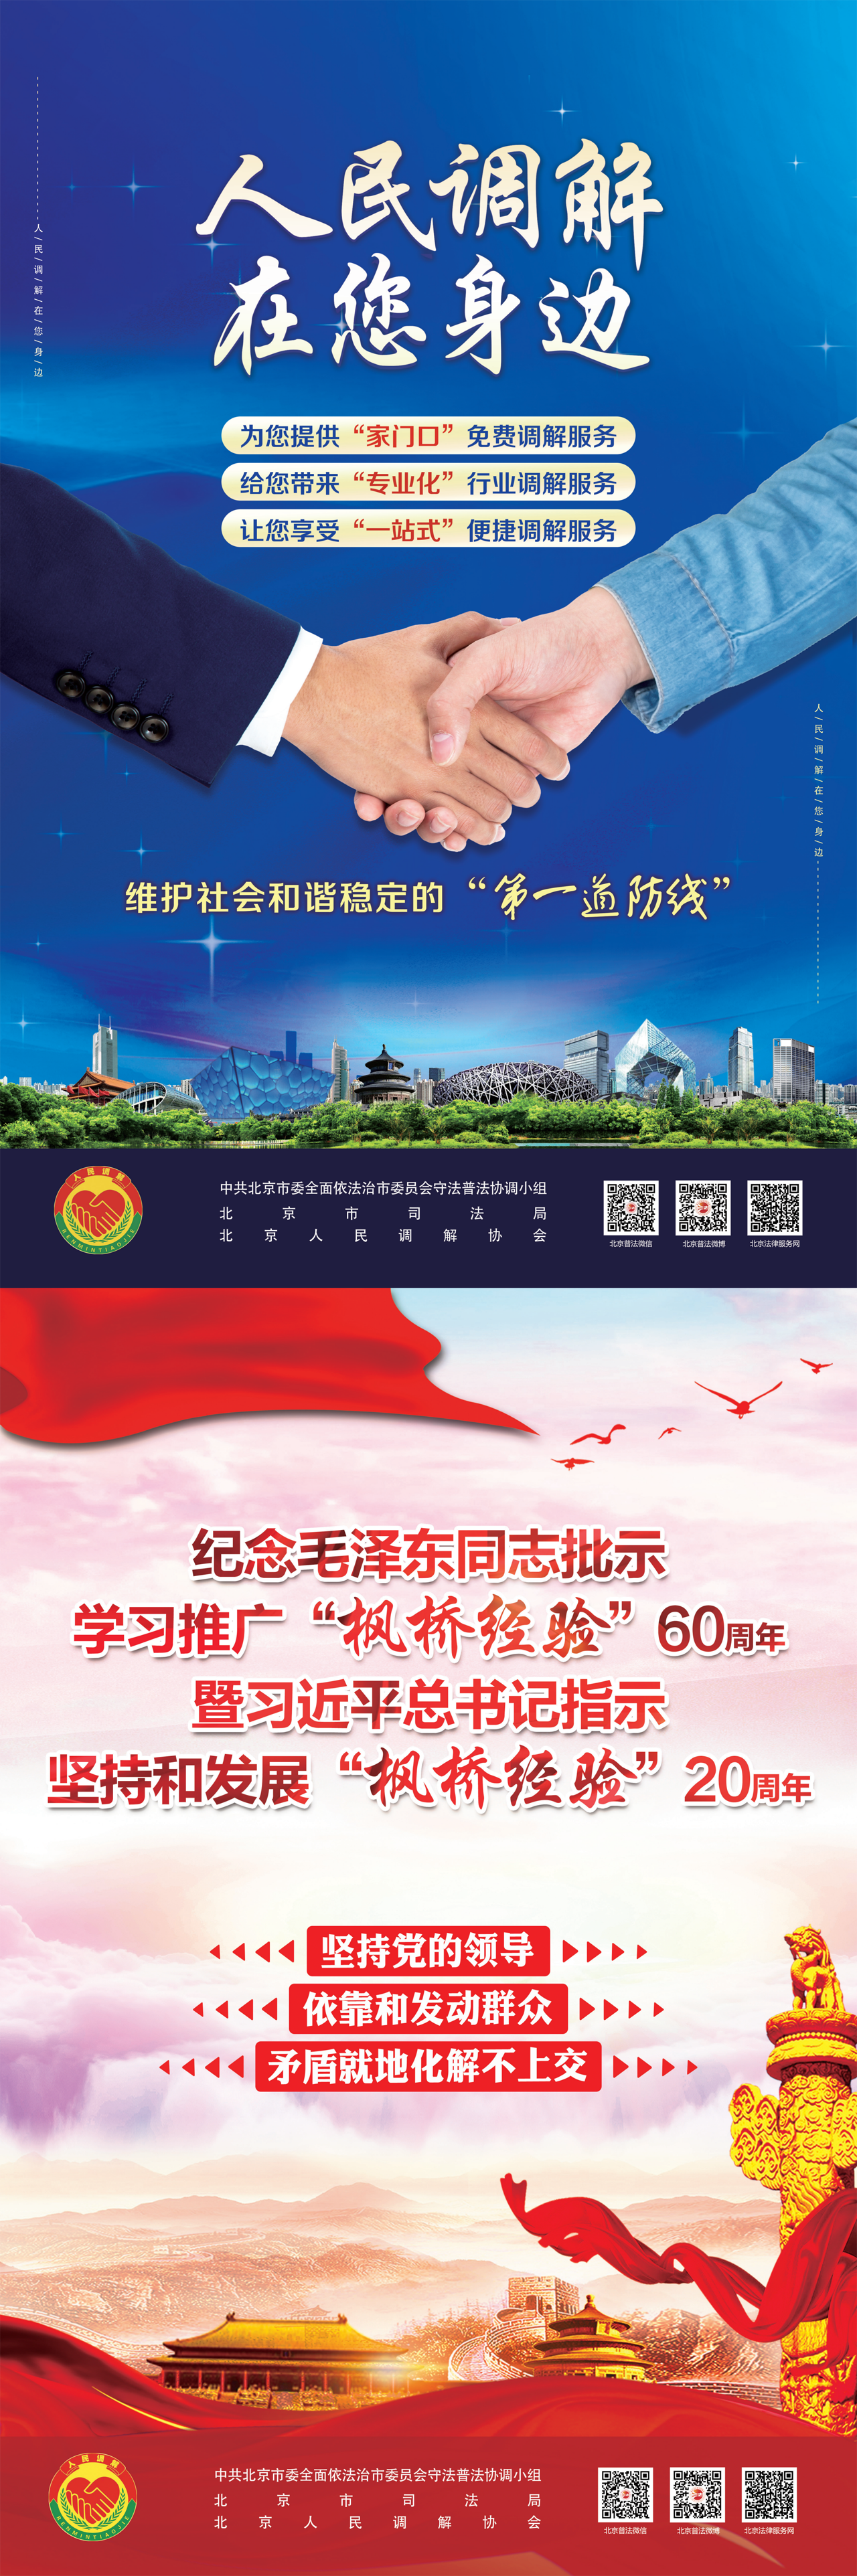 北京市普法宣传挂图第八期